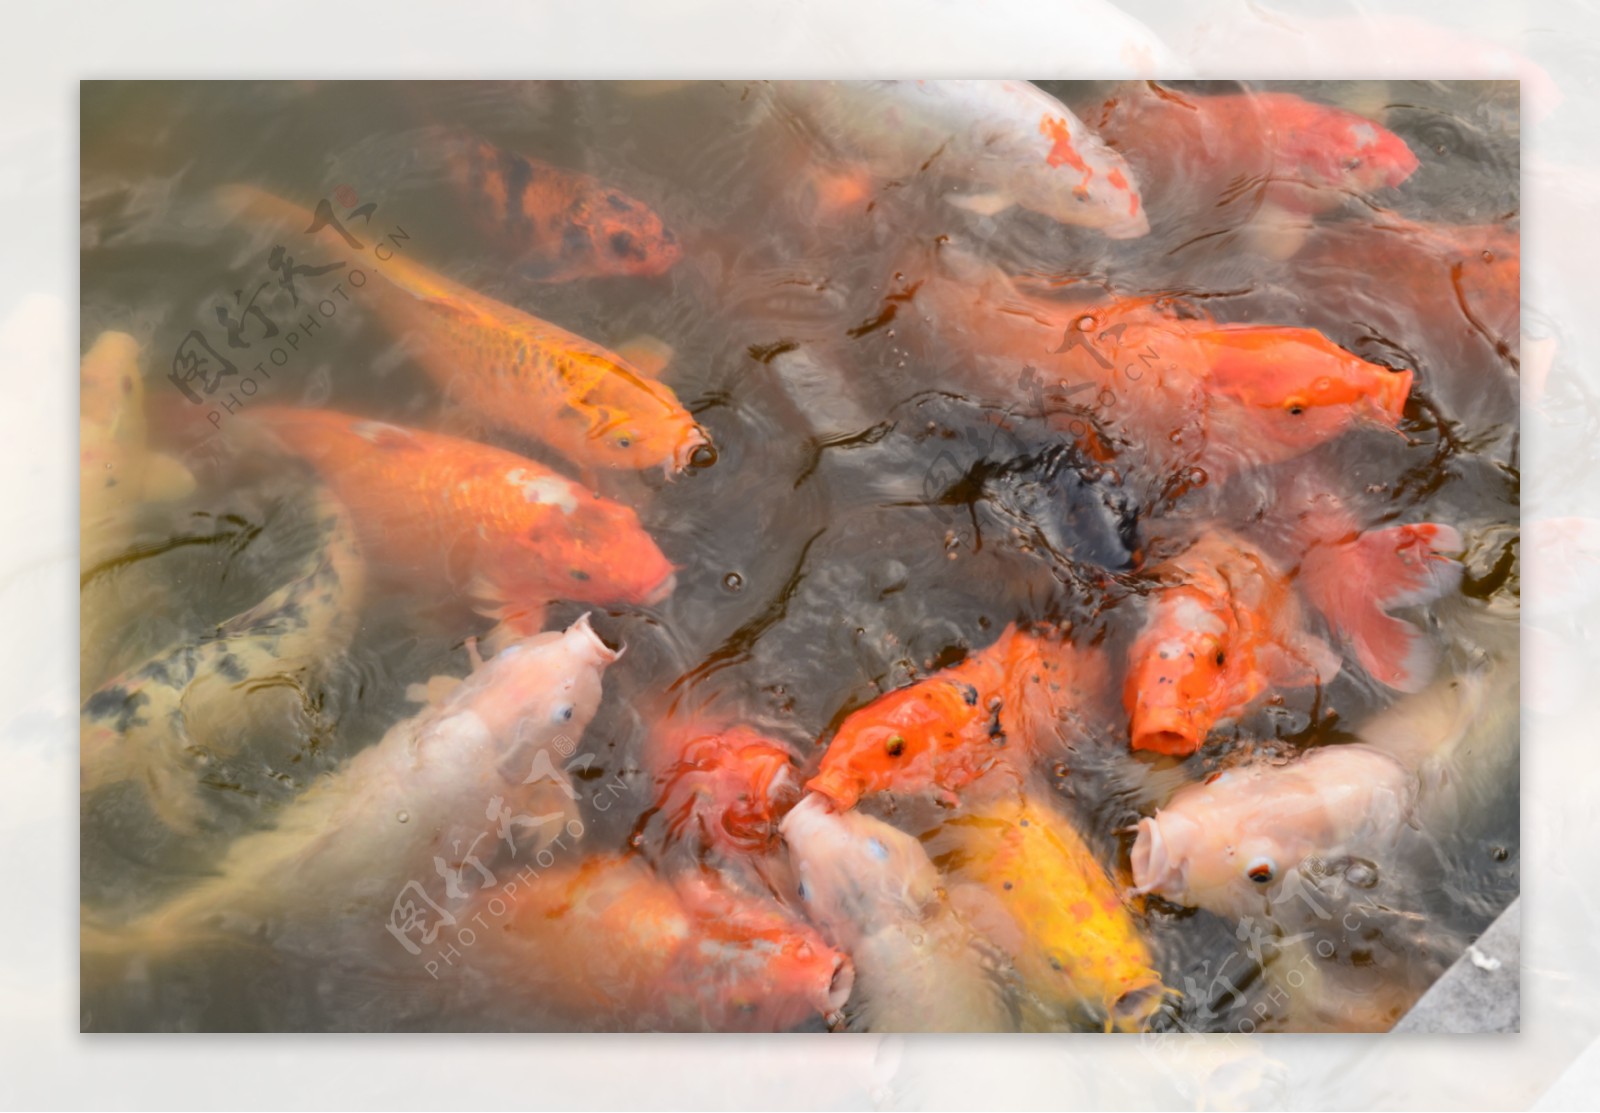 图片素材 : 池塘, 多彩, 锦鲤, 鲤鱼, 海洋生物学 3264x2448 - - 601618 - 素材中国, 高清壁纸 - PxHere摄影图库